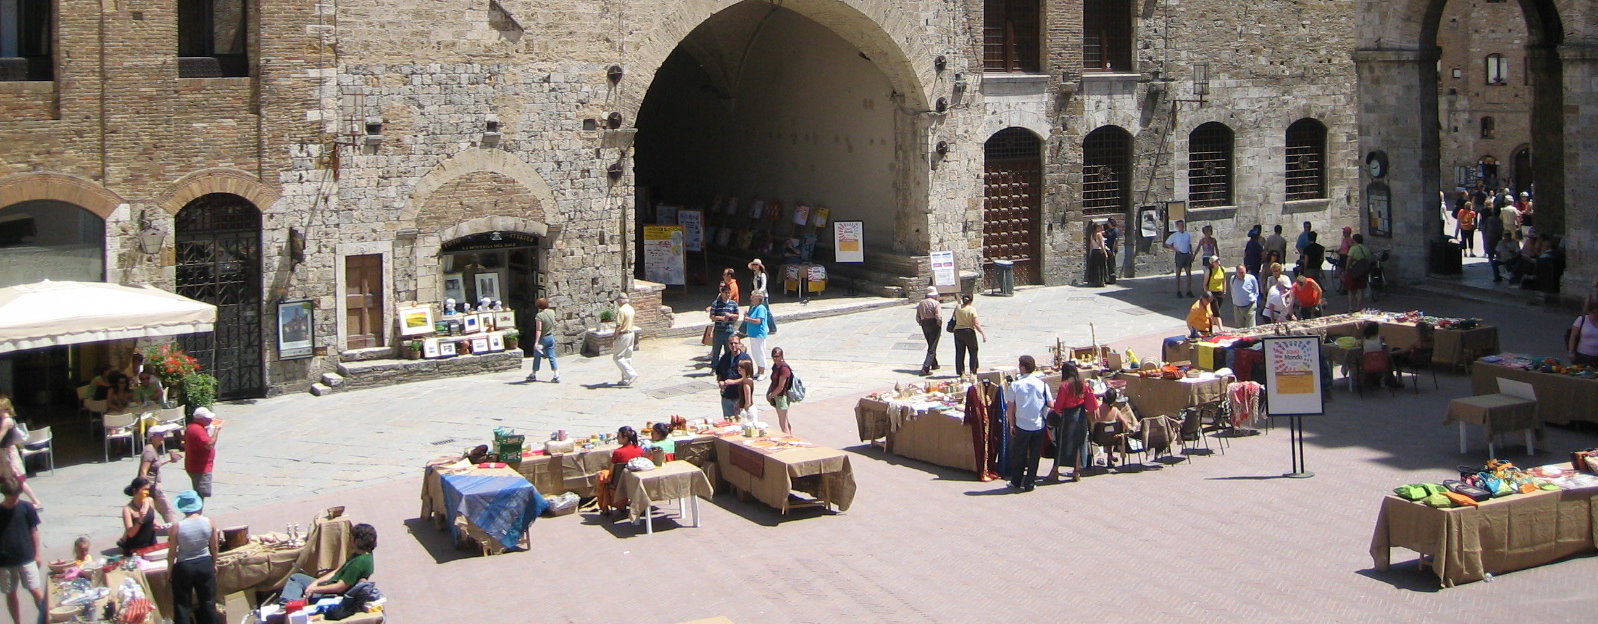 San-Gimignano-Tuscany-Siena-Italy